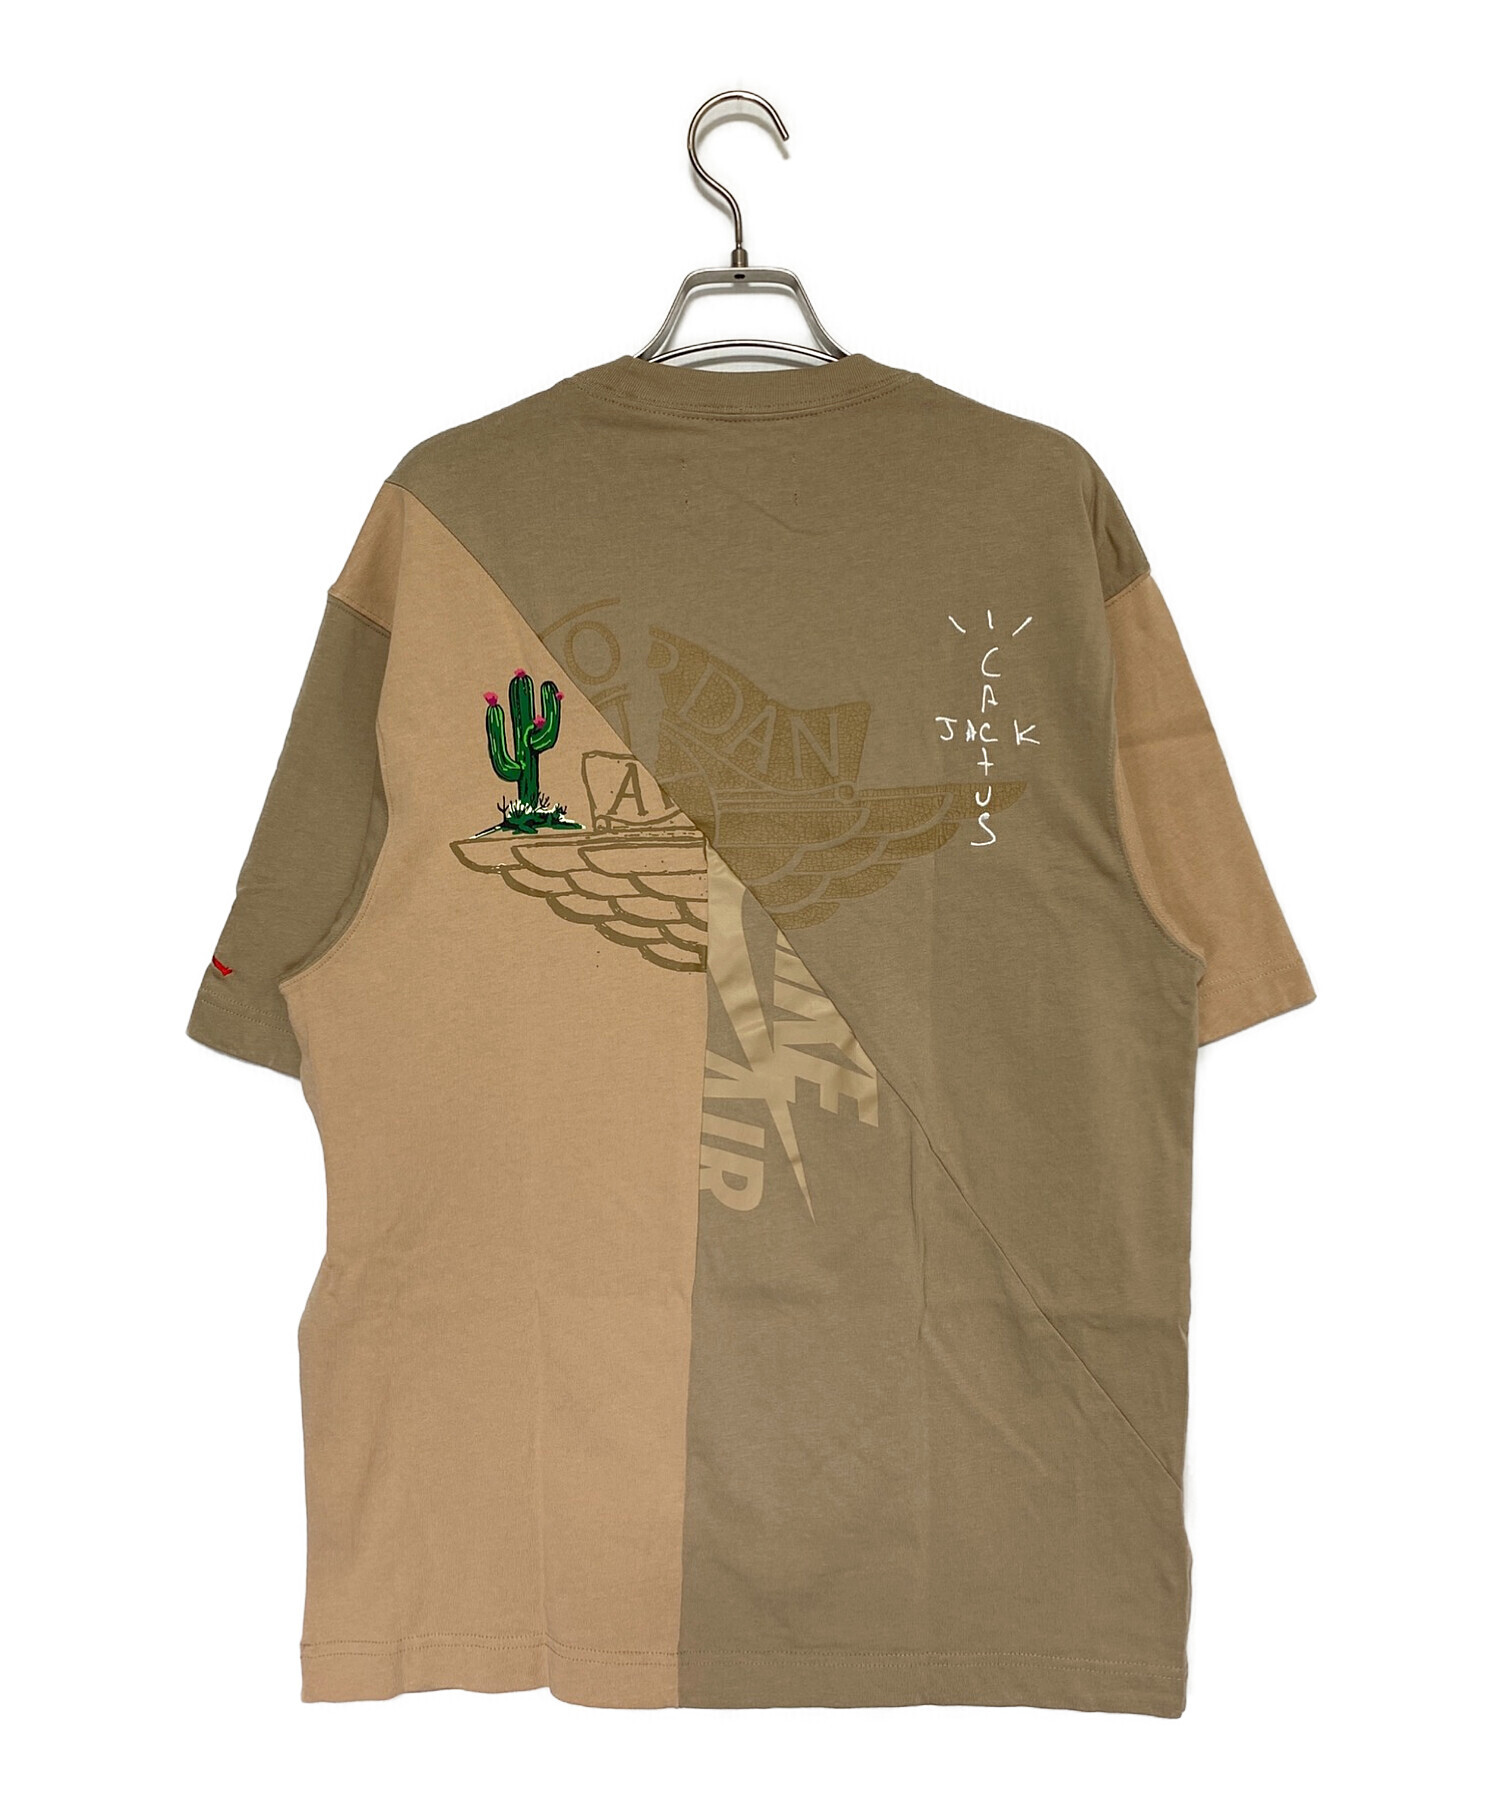 JORDAN (ジョーダン) cactus jack (カクタス・ジャック) Tシャツ ベージュ サイズ:M